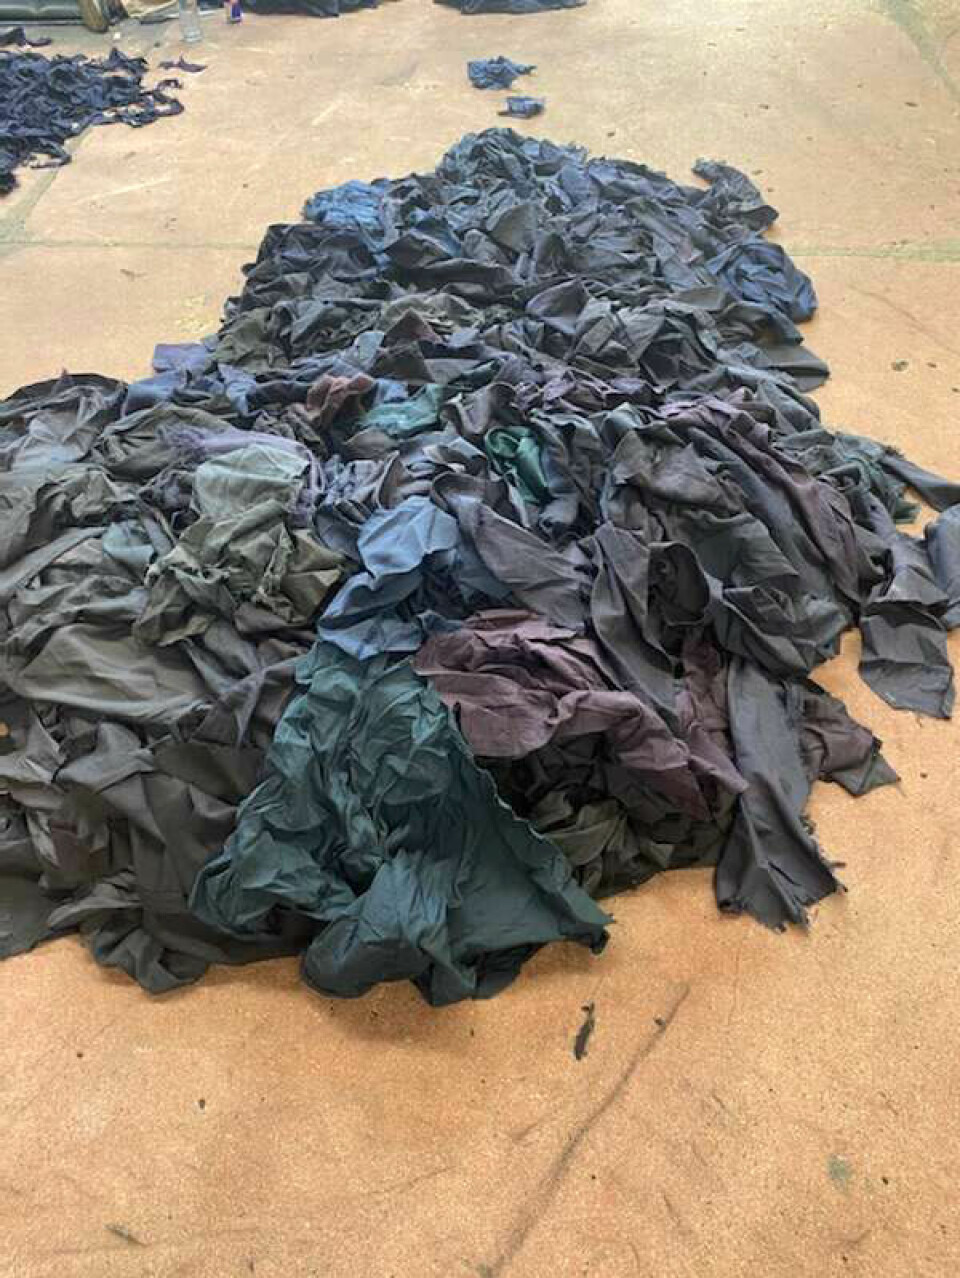 Ved en av fabrikkene som Smallmatters ønsker å samarbeide med, blir brukte plagg sortert etter farge før de kappes opp og spinnes til nytt garn.